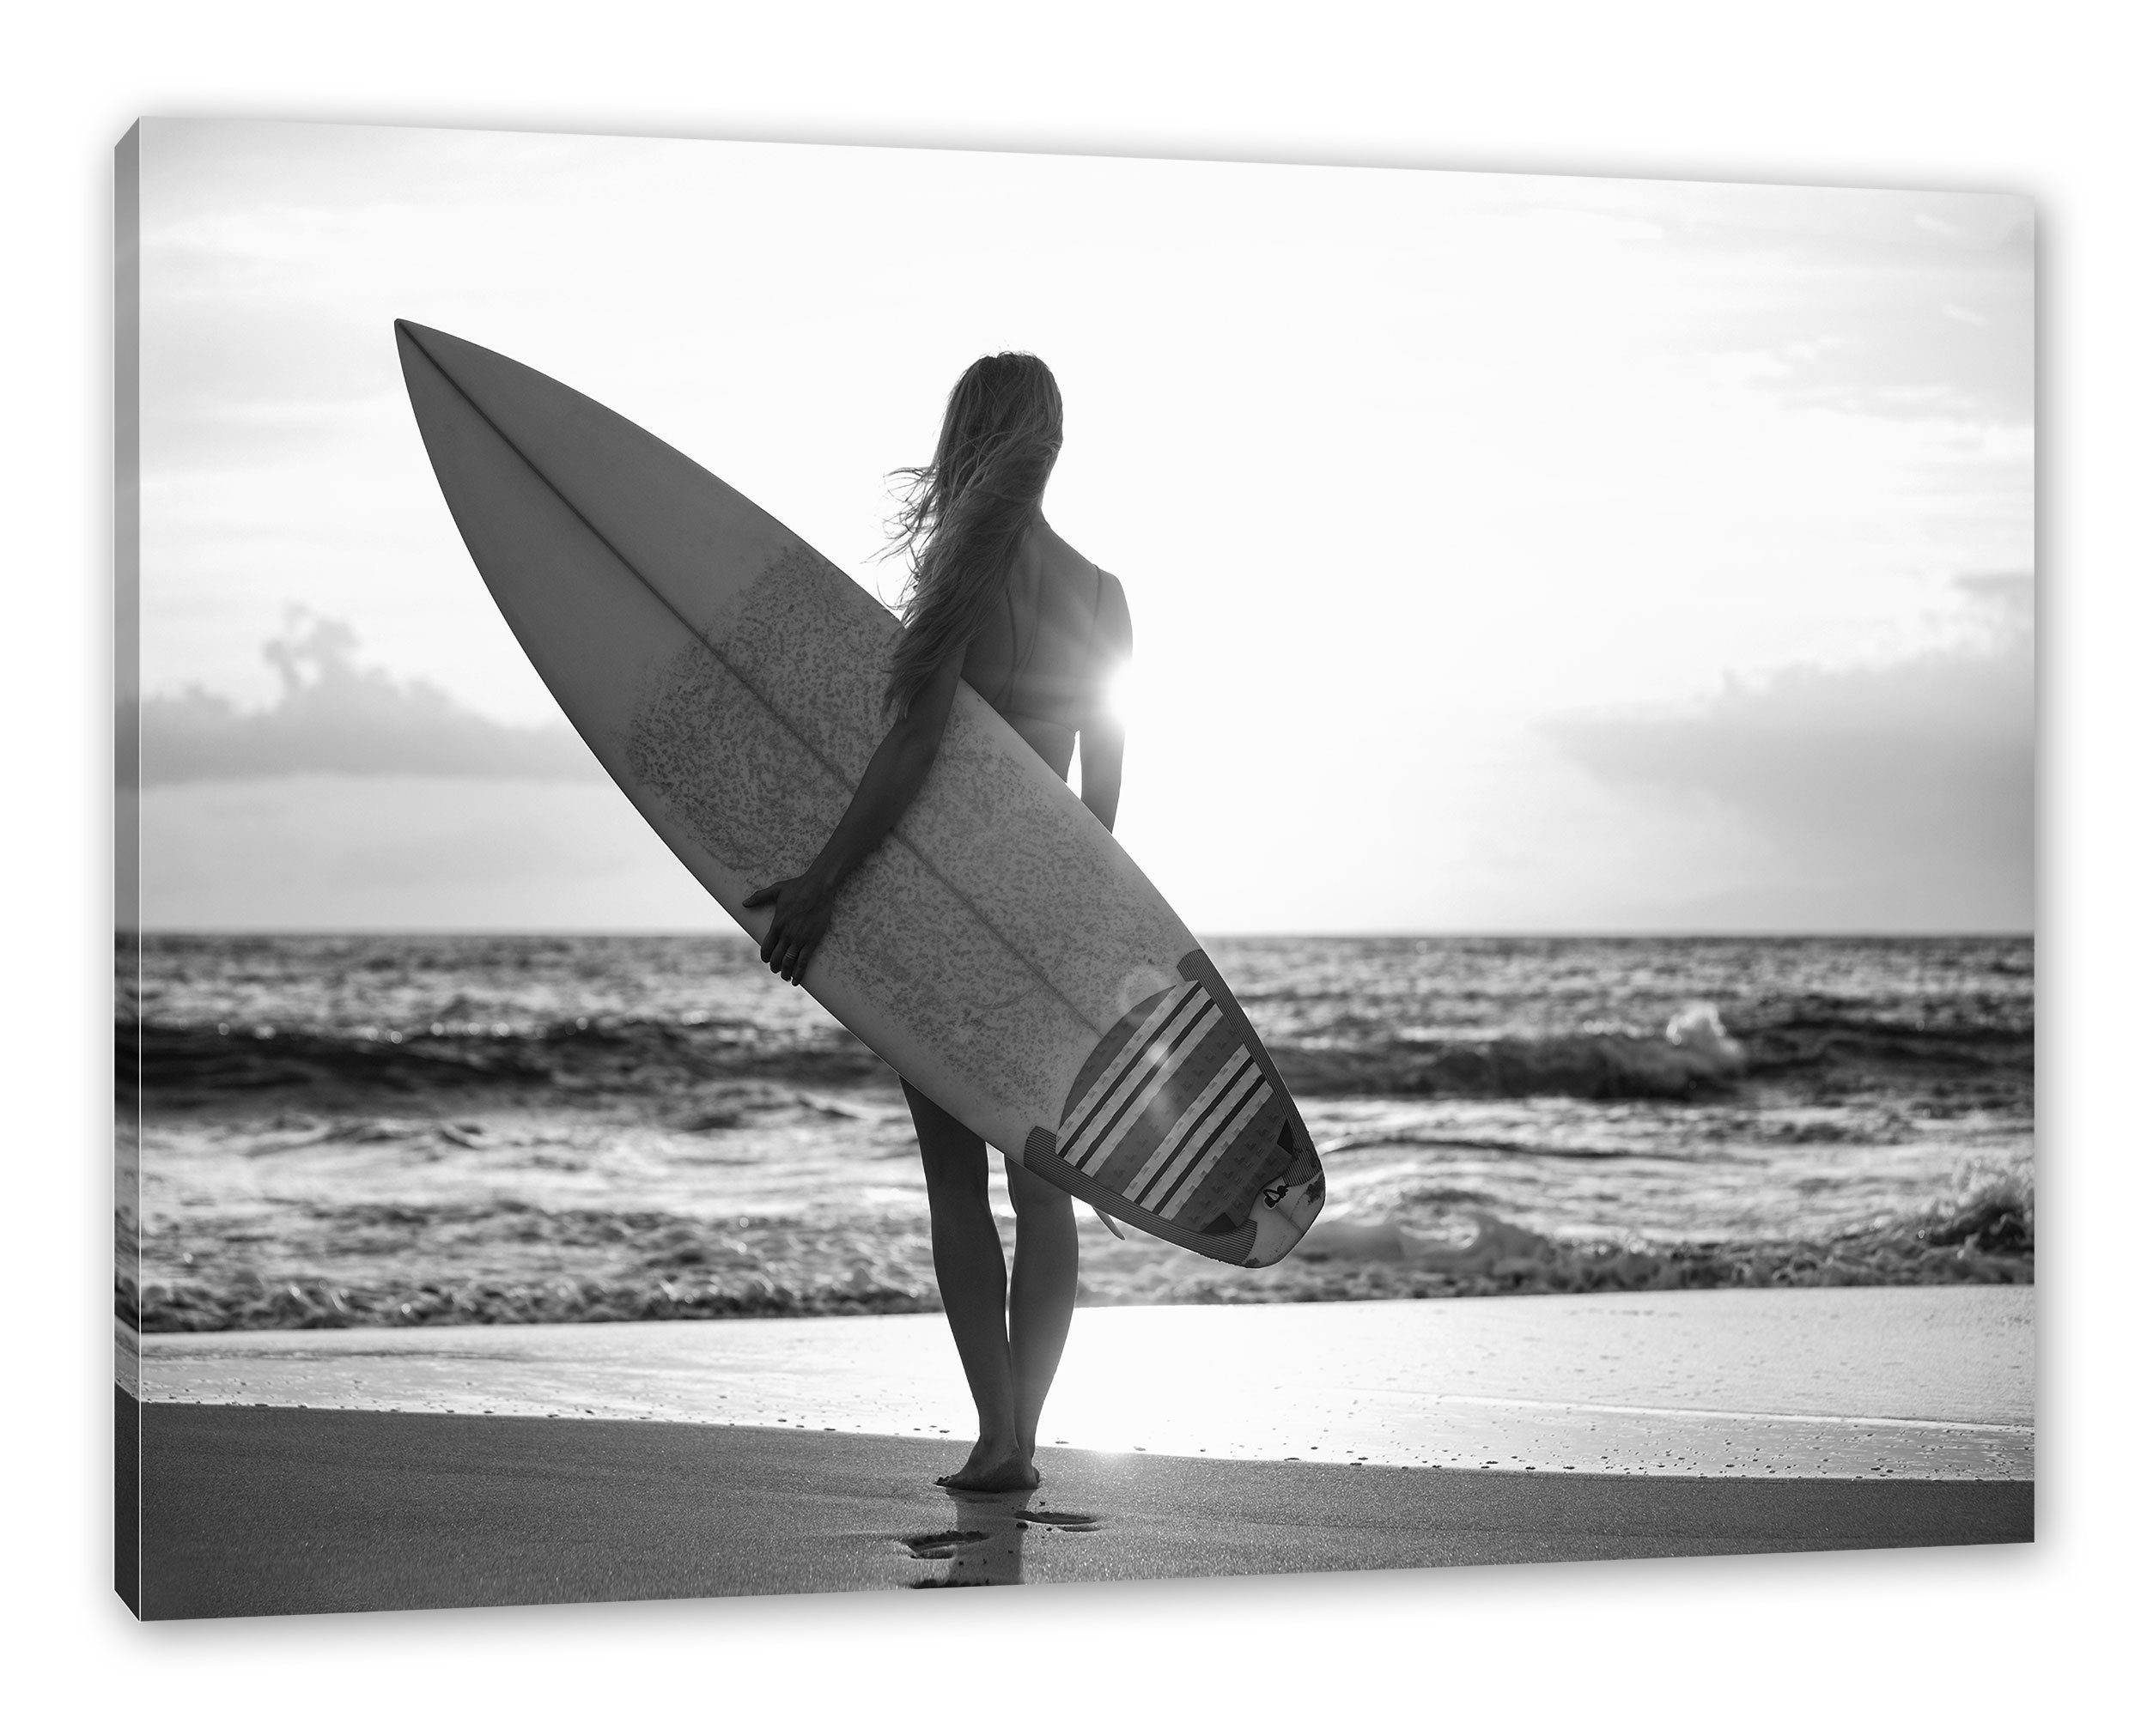 Pixxprint Leinwandbild Surferin vor Sonnenuntergang, Surferin vor Sonnenuntergang (1 St), Leinwandbild fertig bespannt, inkl. Zackenaufhänger